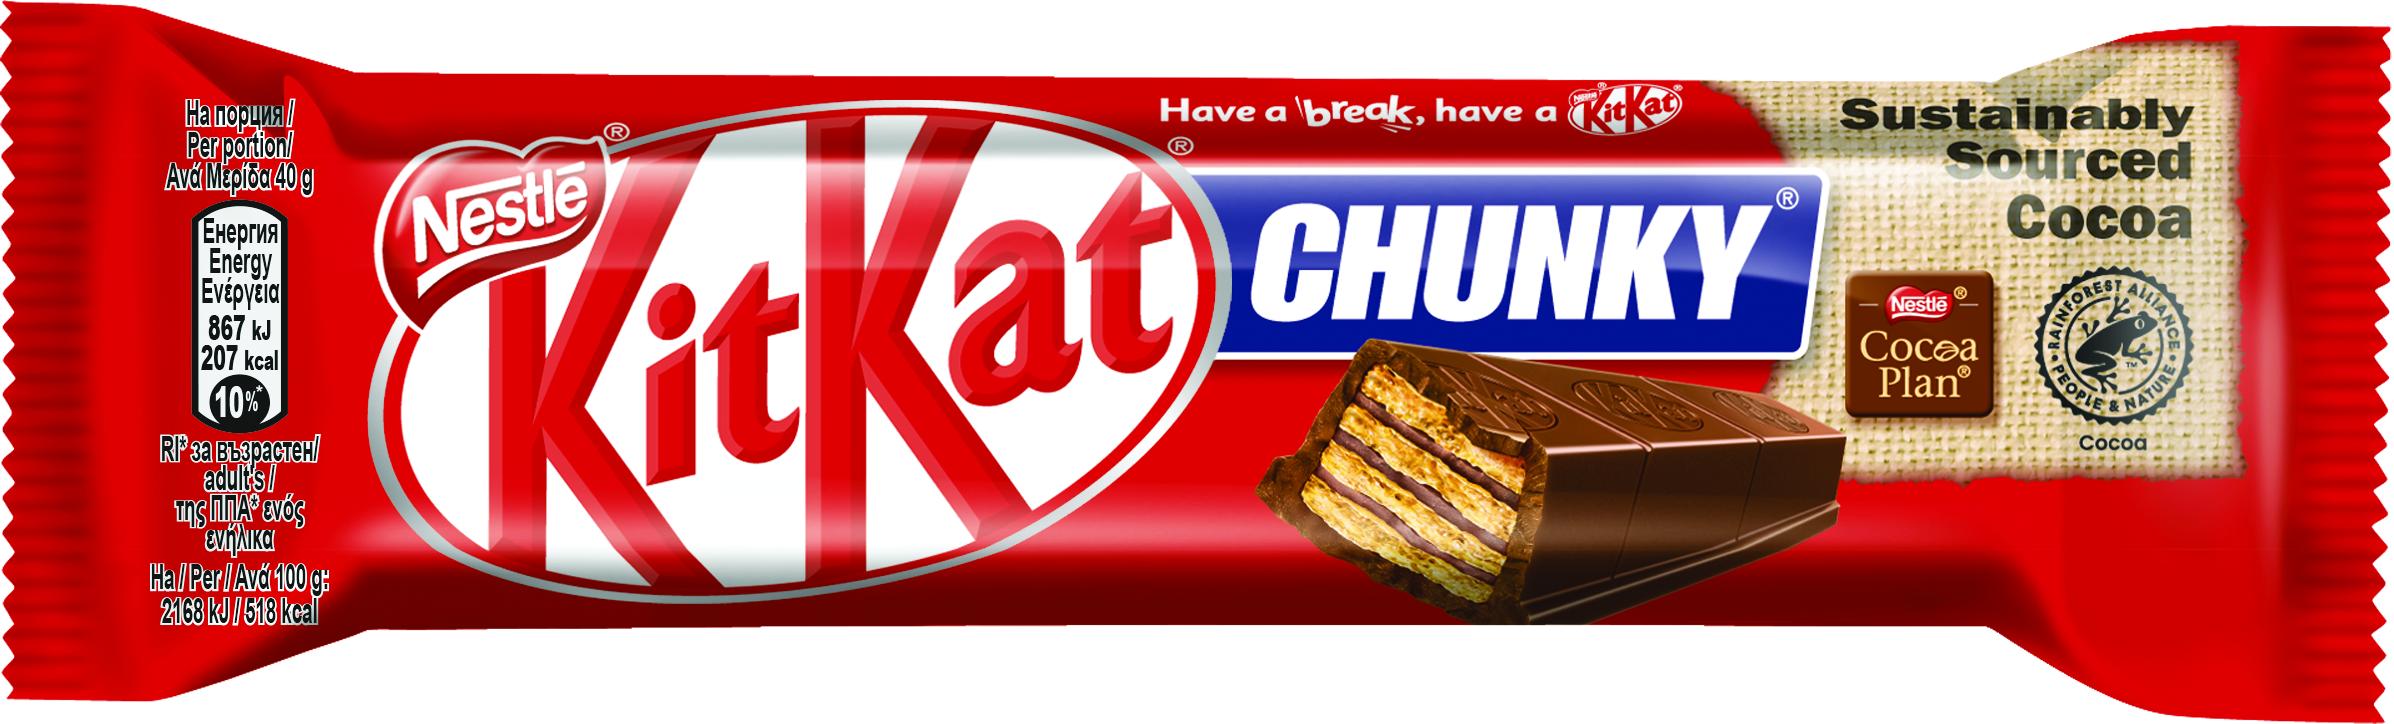 Slika za Čokoladica Kit Kat chunky 40g